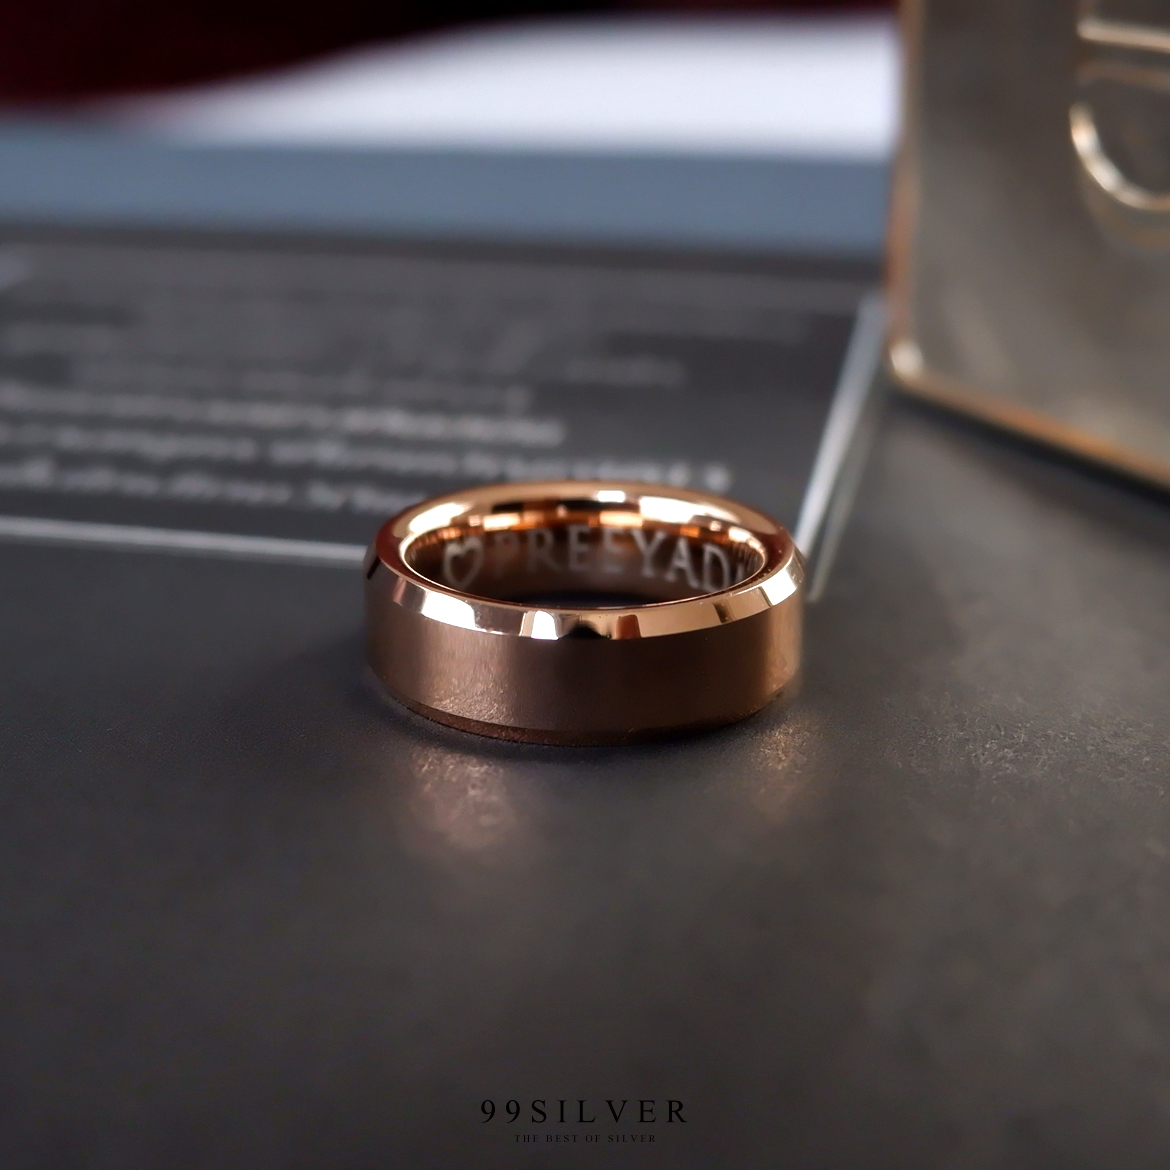 แหวน Tungsten แท้หน้ากว้าง 6 มิลลิเมตร ขอบลดมุมตัดสวยงาม เคลือบพิ้งค์โกล